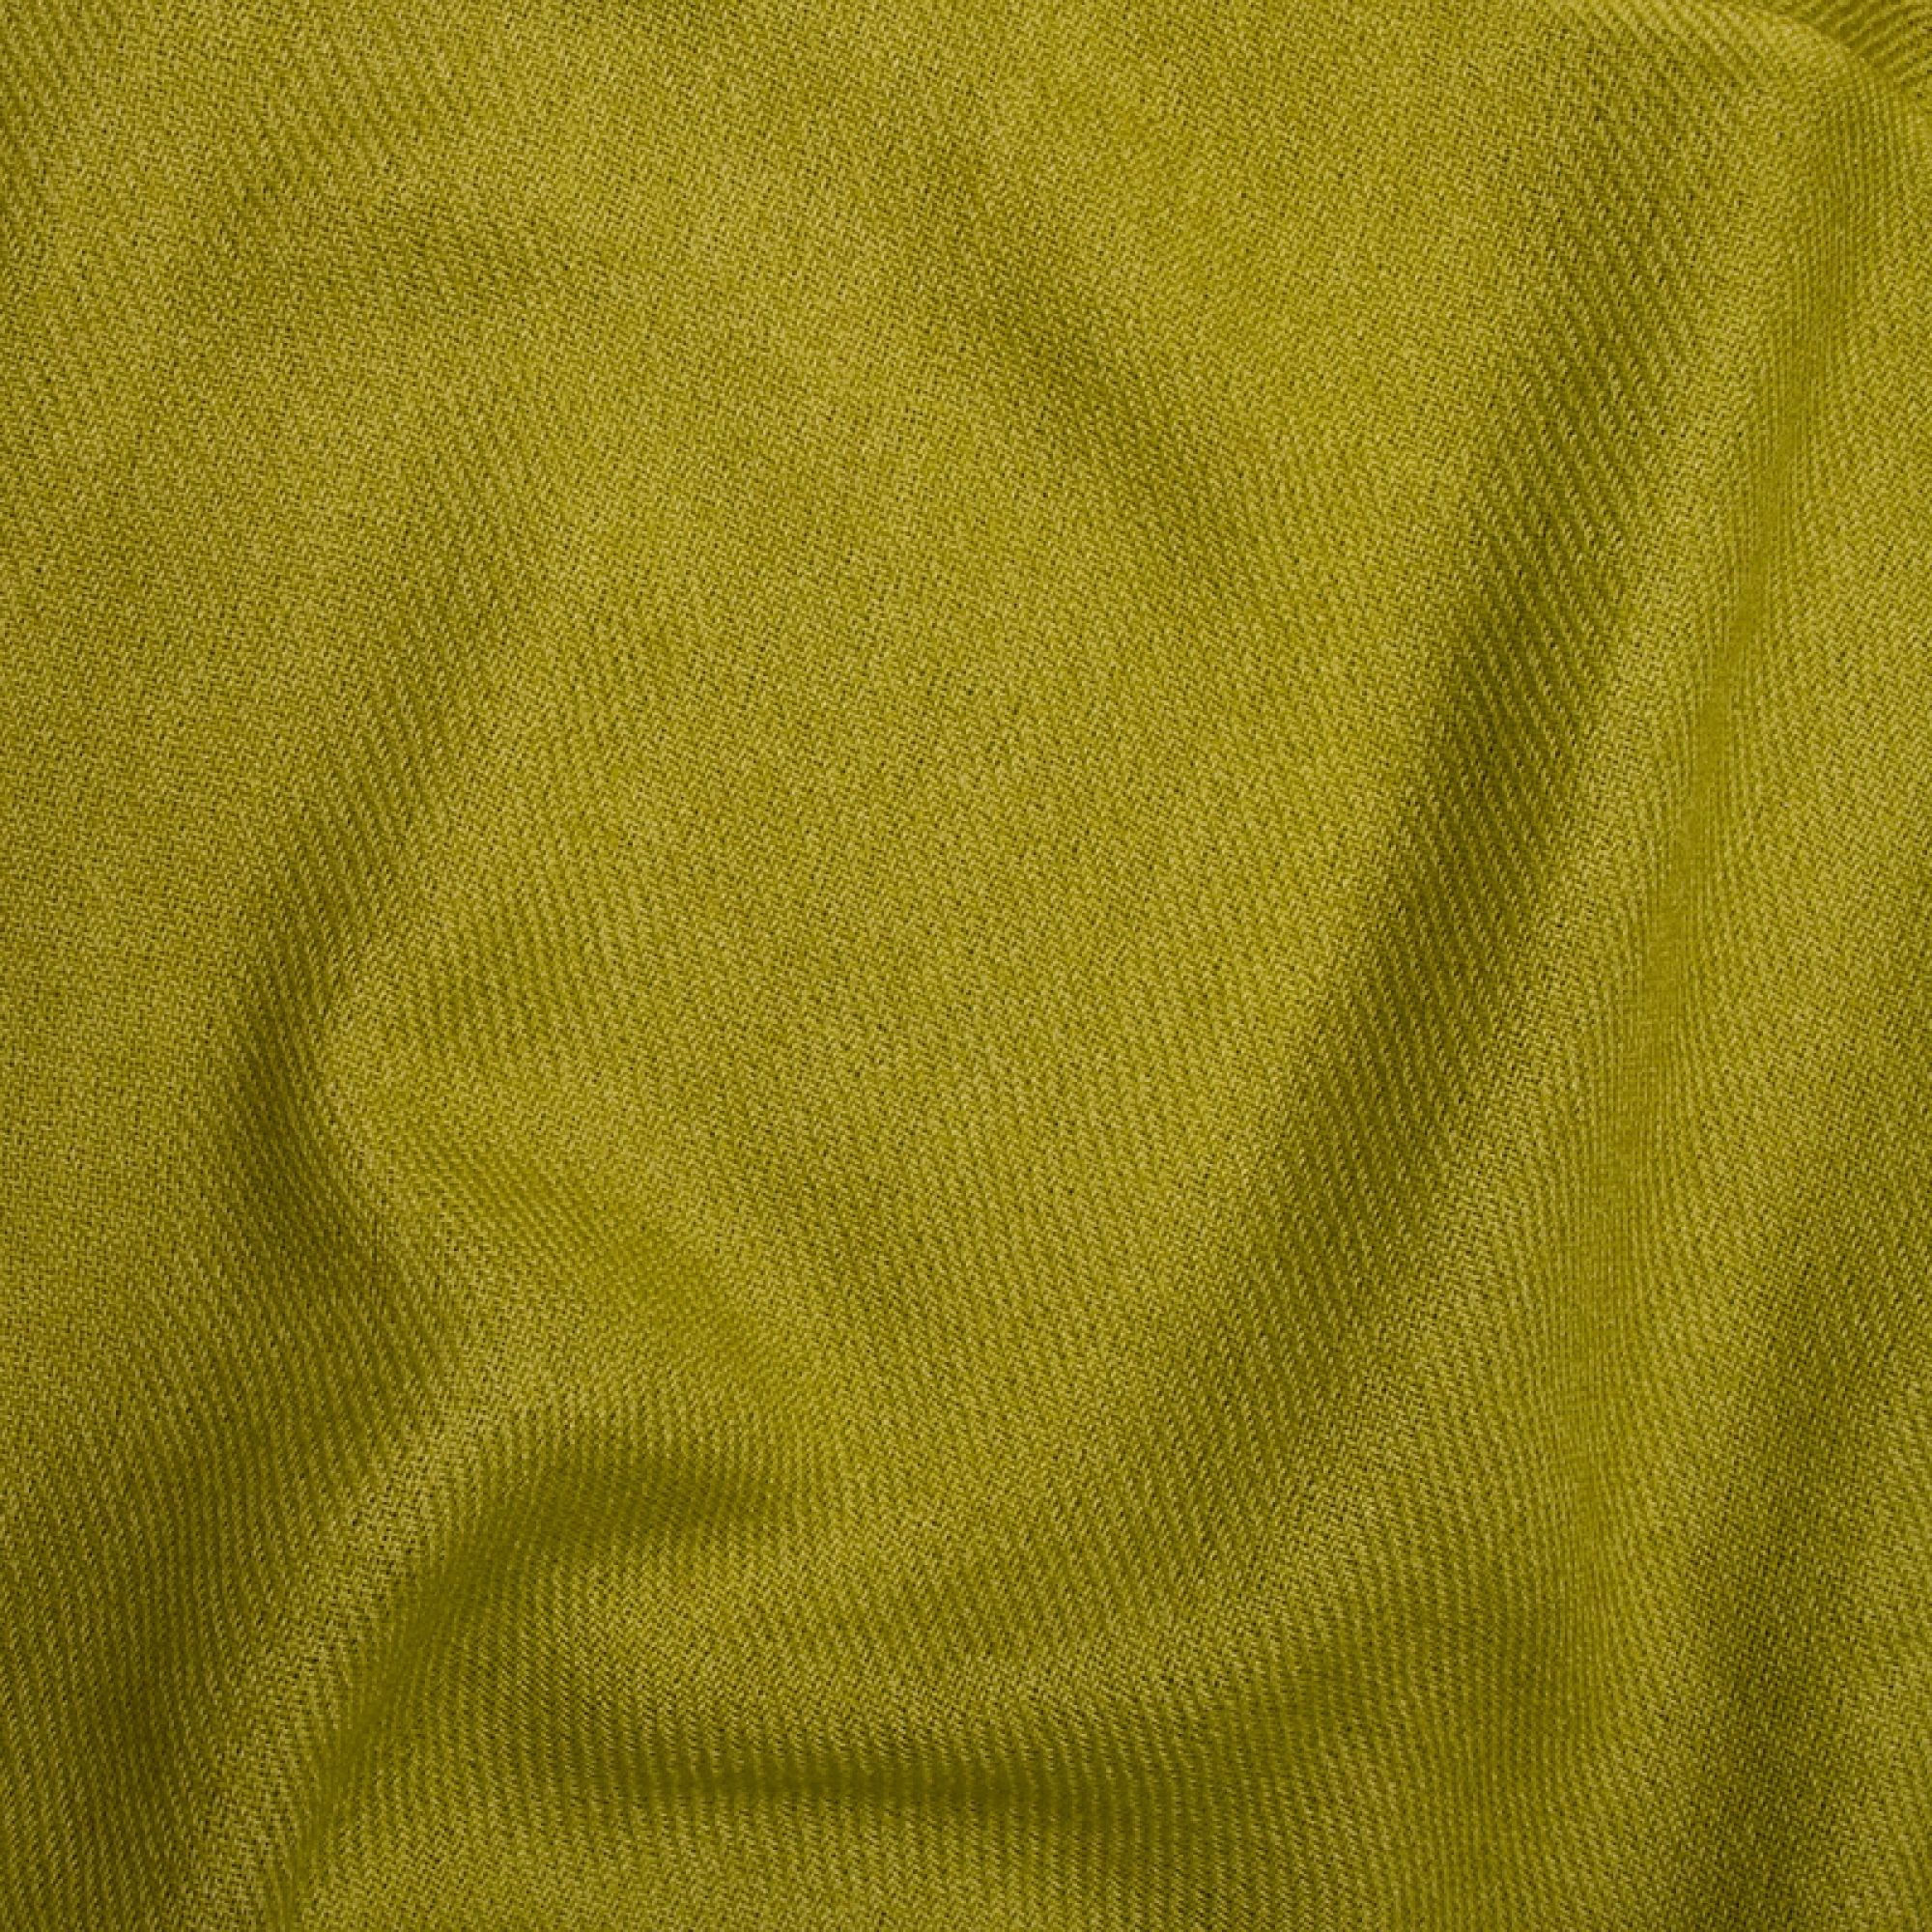 Cachemire accessoires couvertures plaids toodoo plain xl 240 x 260 vert petillant 240 x 260 cm